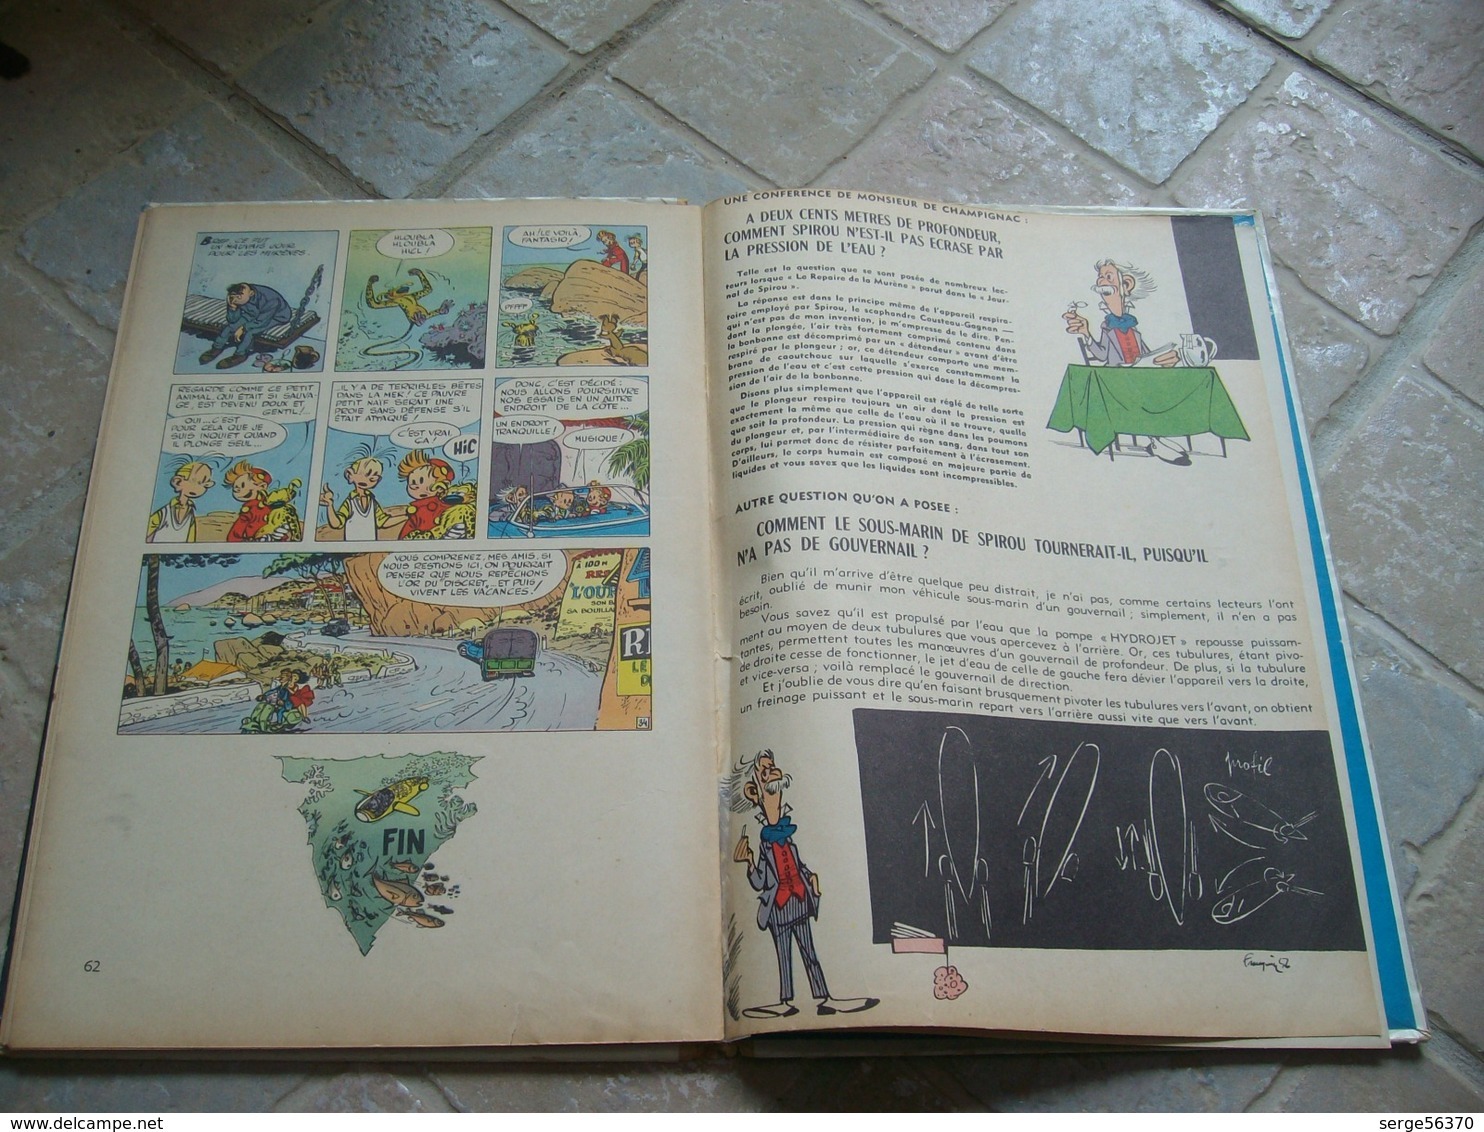 Spirou et Fantasio 9 Le repaire de la murène FRANQUIN Marsupilami édition de 1969 EO éo belge première originale